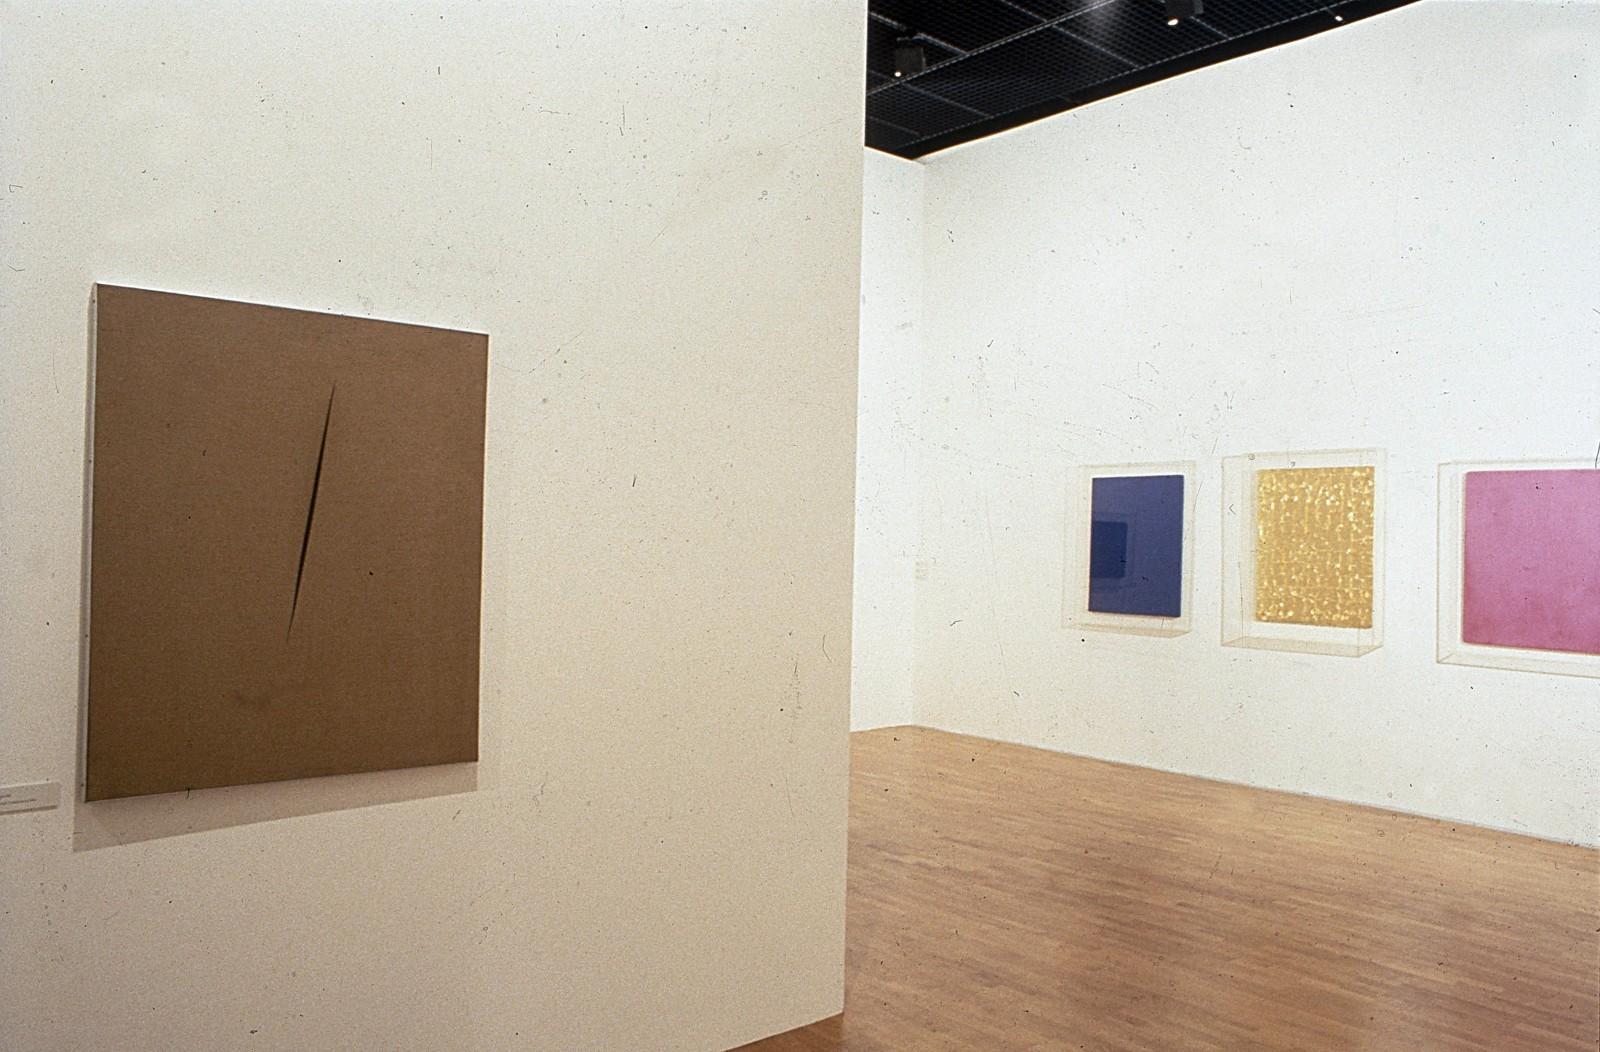 Vue de l'exposition "La Couleur seule : l'expérience du monochrome", Musée Saint-Pierre art contemporain, 1988 (IKB 68, MG 8, MP 19)